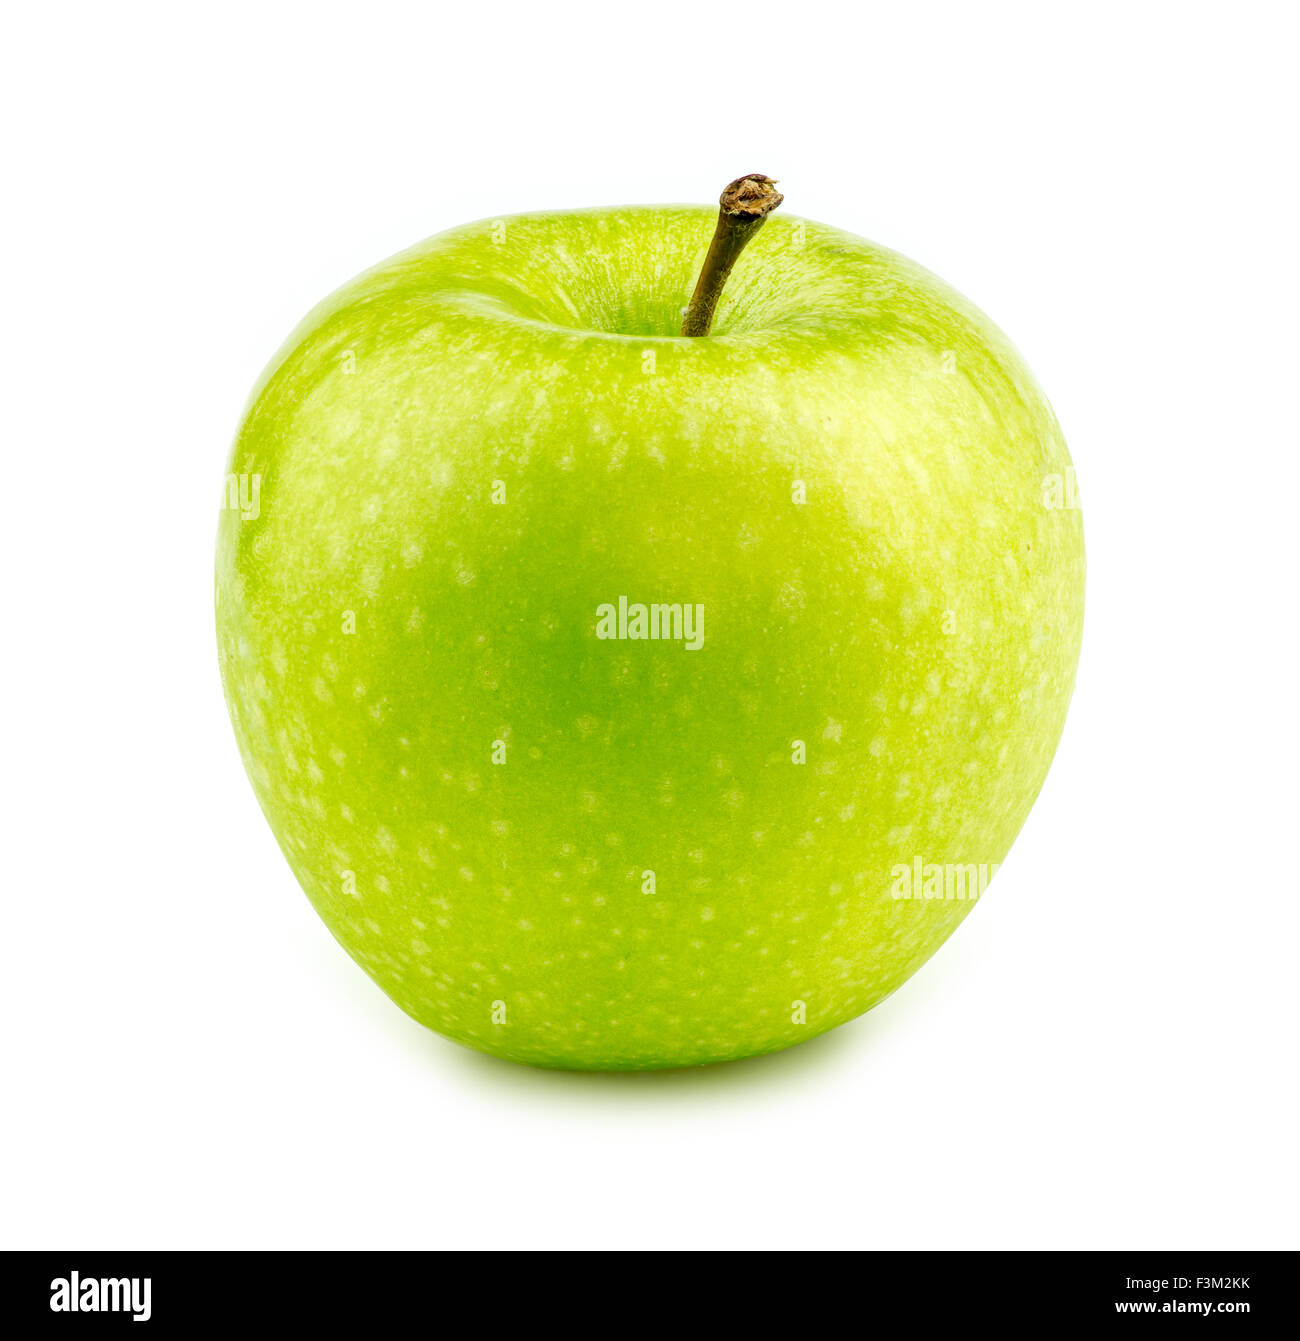 Isolated macro of a green granny smith apple Stock Photo